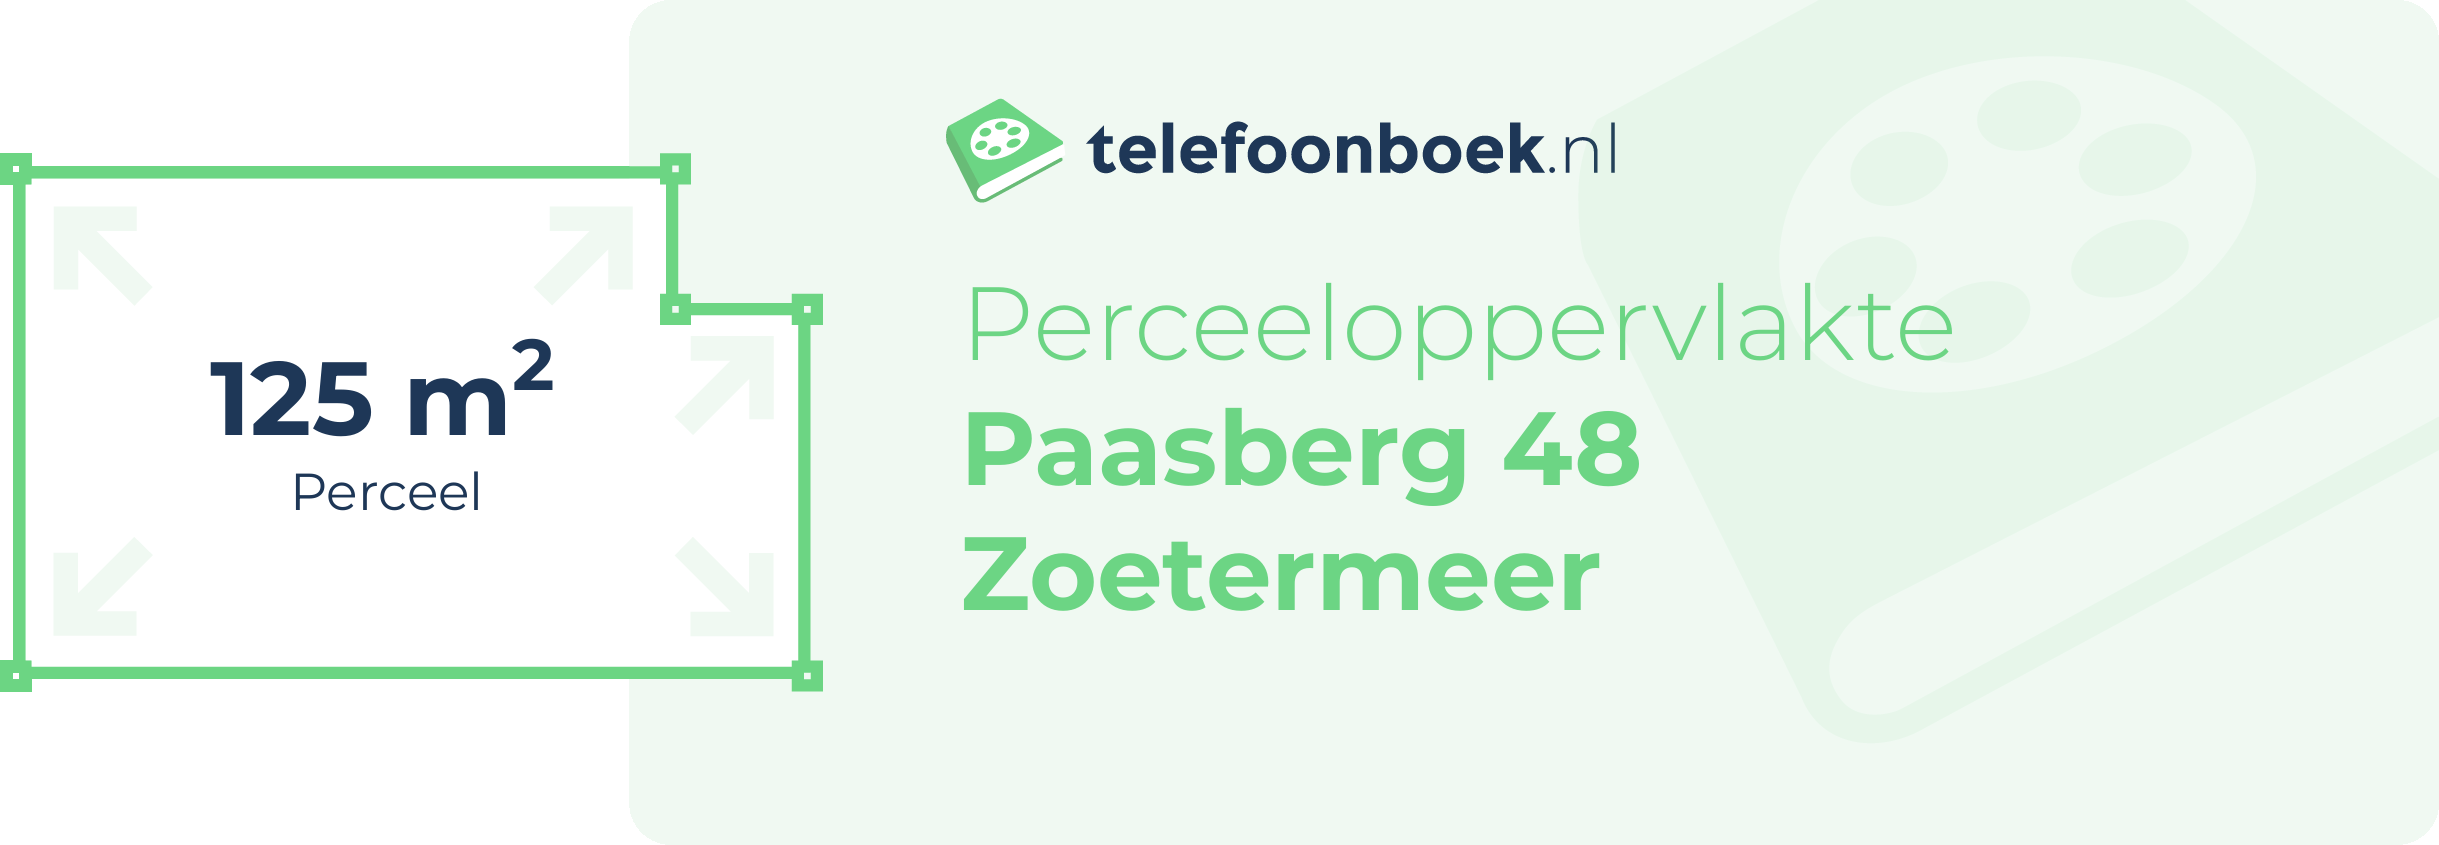 Perceeloppervlakte Paasberg 48 Zoetermeer